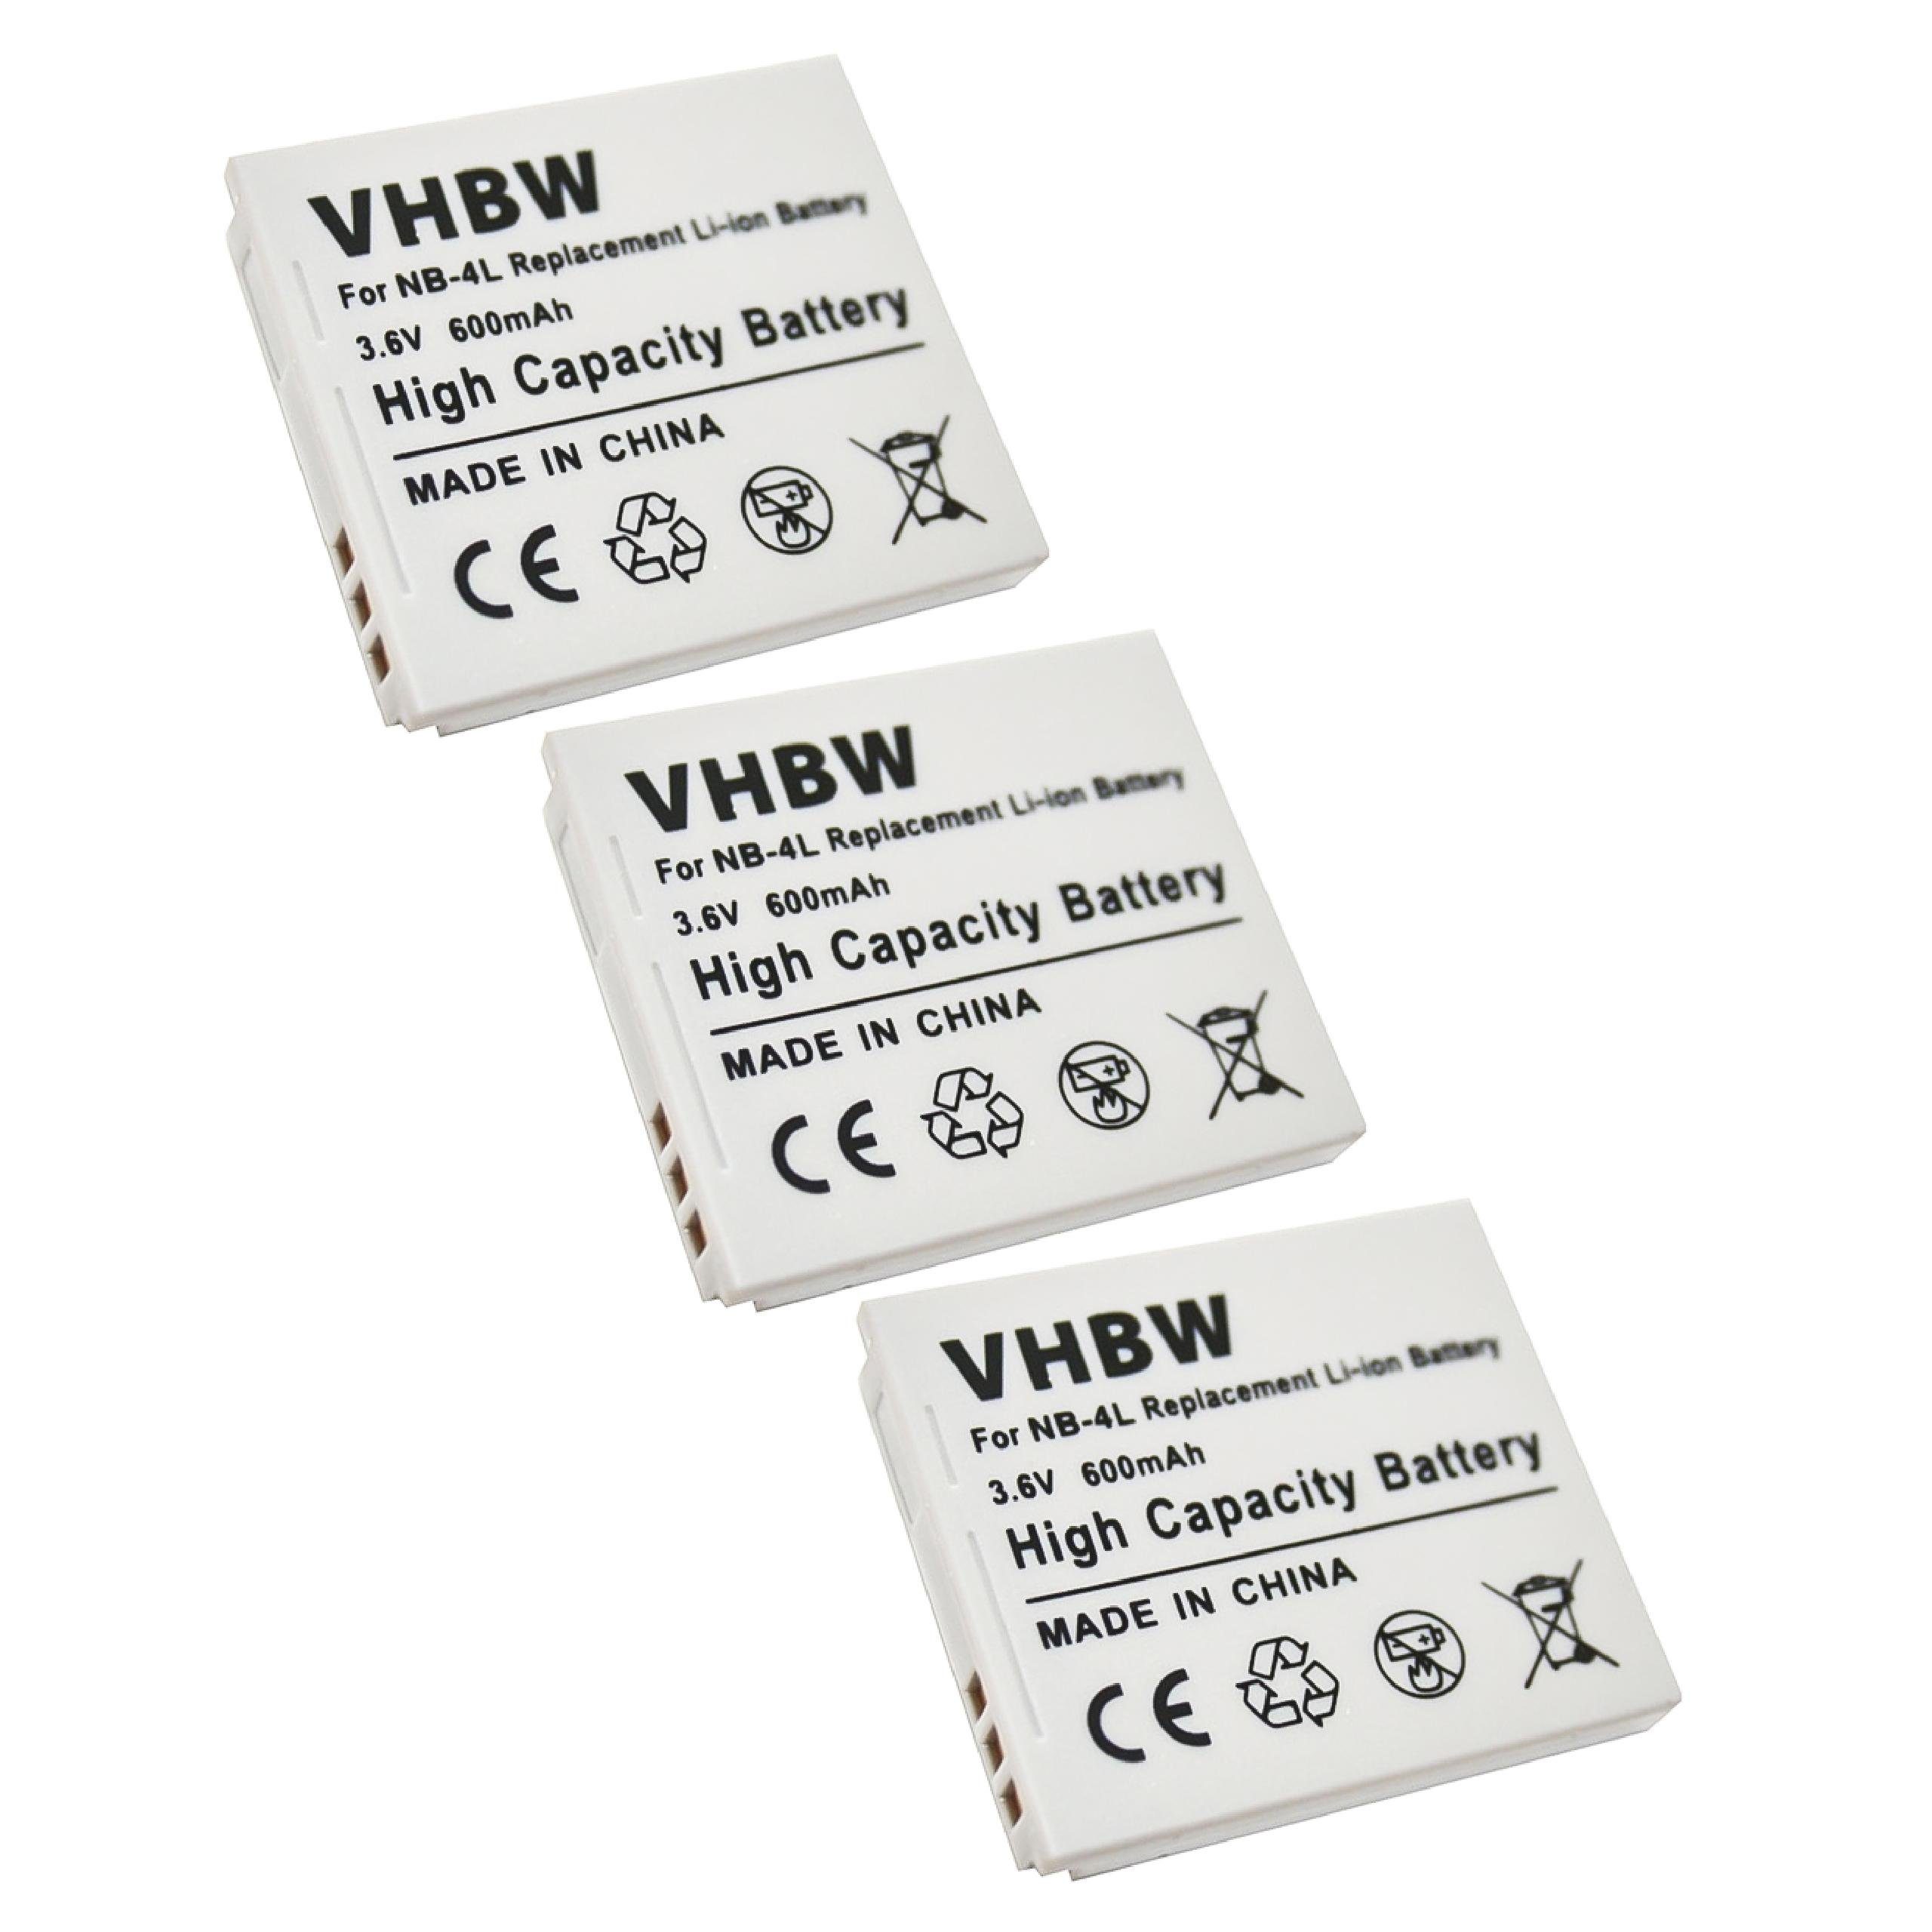 vhbw kompatibel mit Canon Digital Ixus 220HS, 100 IS, 110 is, 65, 120 IS, Kamera-Akku Li-Ion 600 mAh (3,6 V)